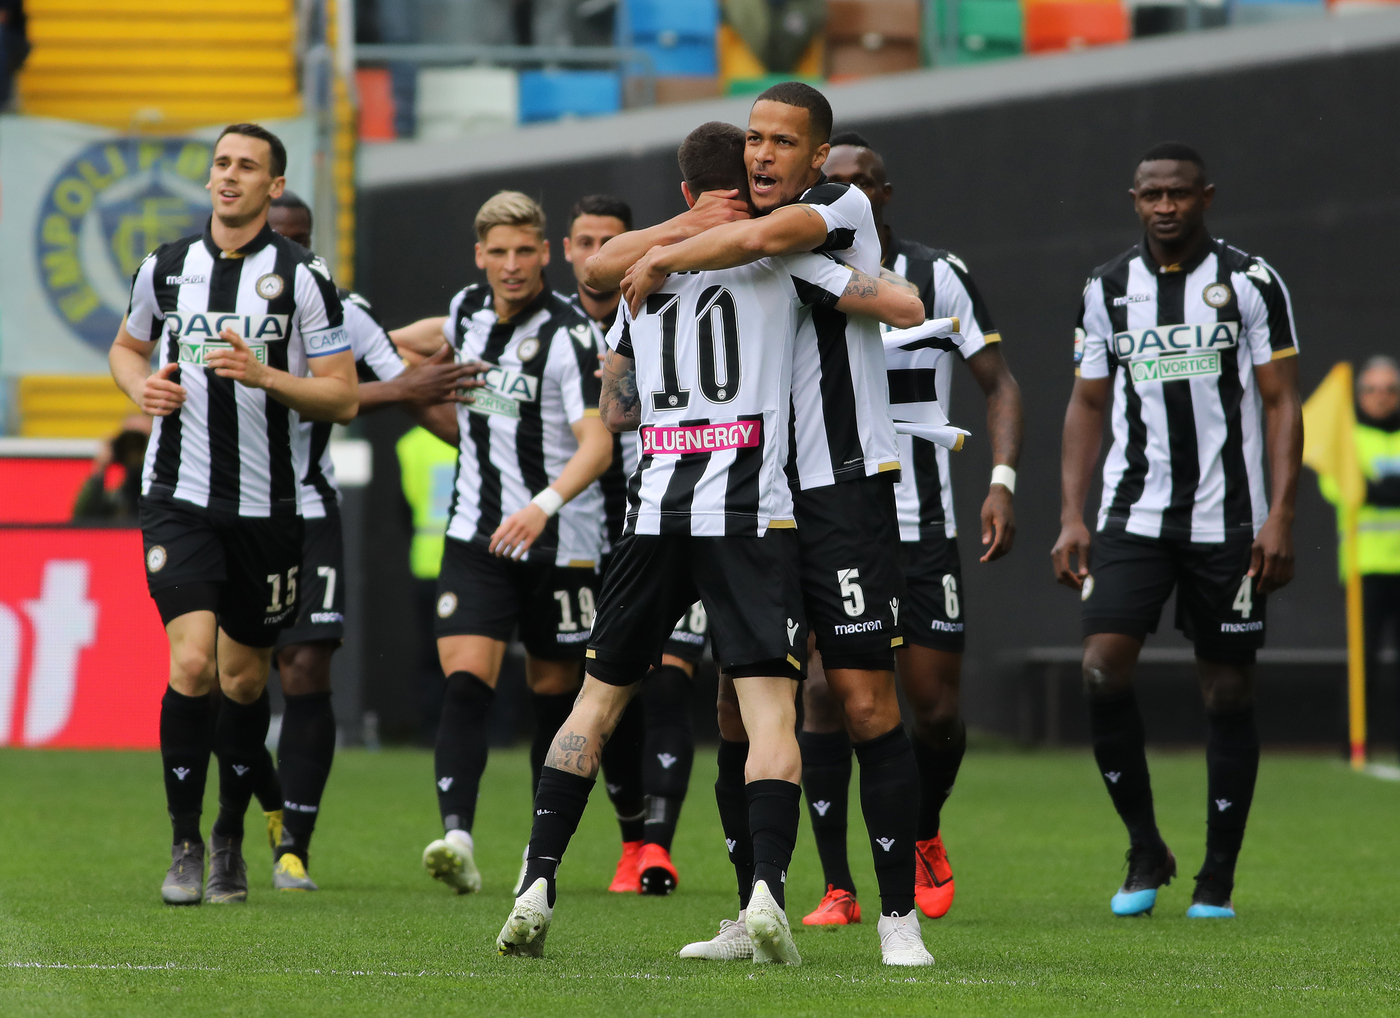 Udinese-Spal 18 maggio: si gioca per la penultima giornata di Serie A. I friulani cercano punti fondamentali per la salvezza.